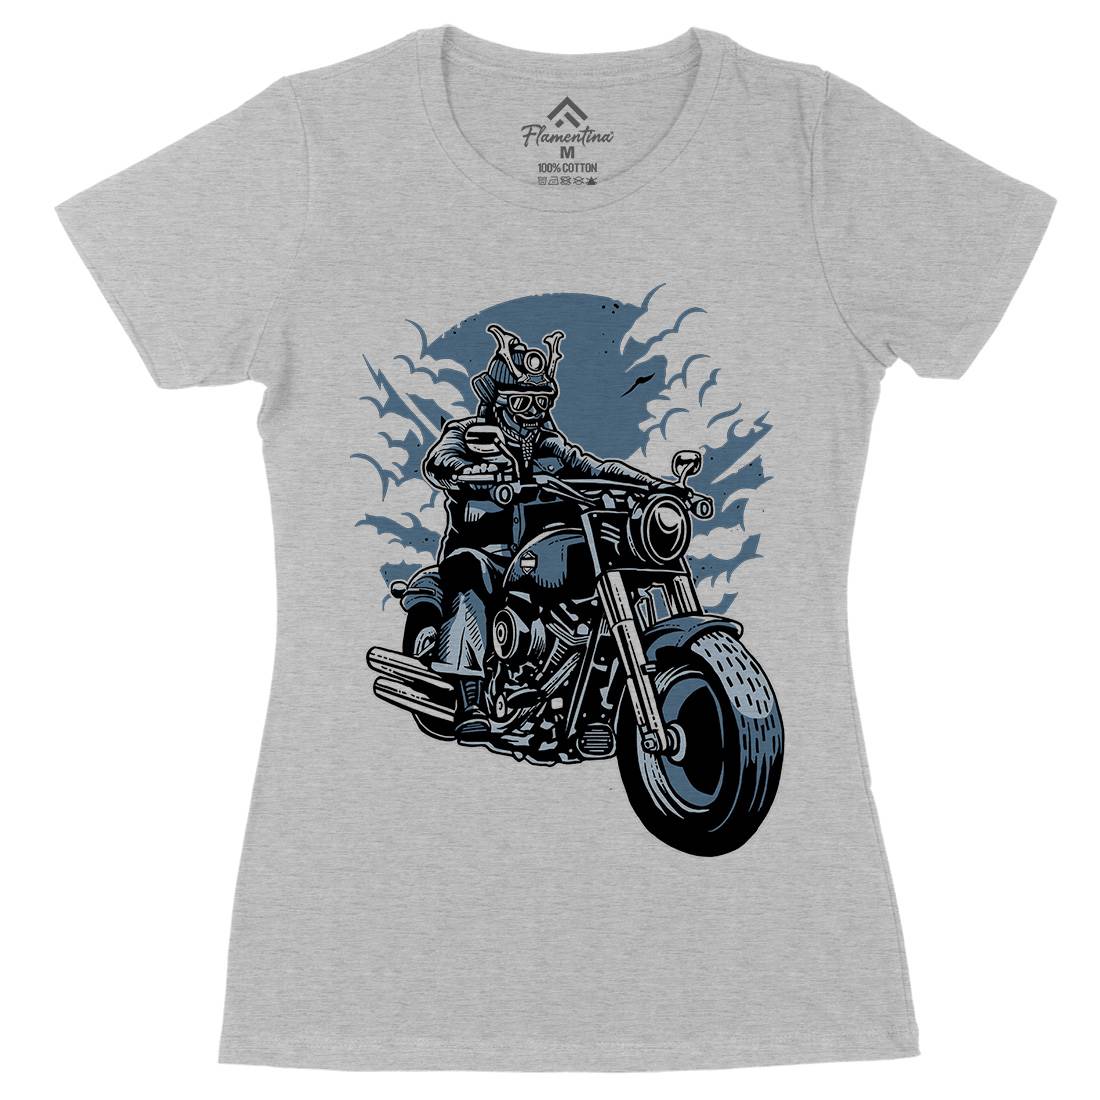 Samurai Ride Womens Organic Crew Neck T-Shirt Warriors A568